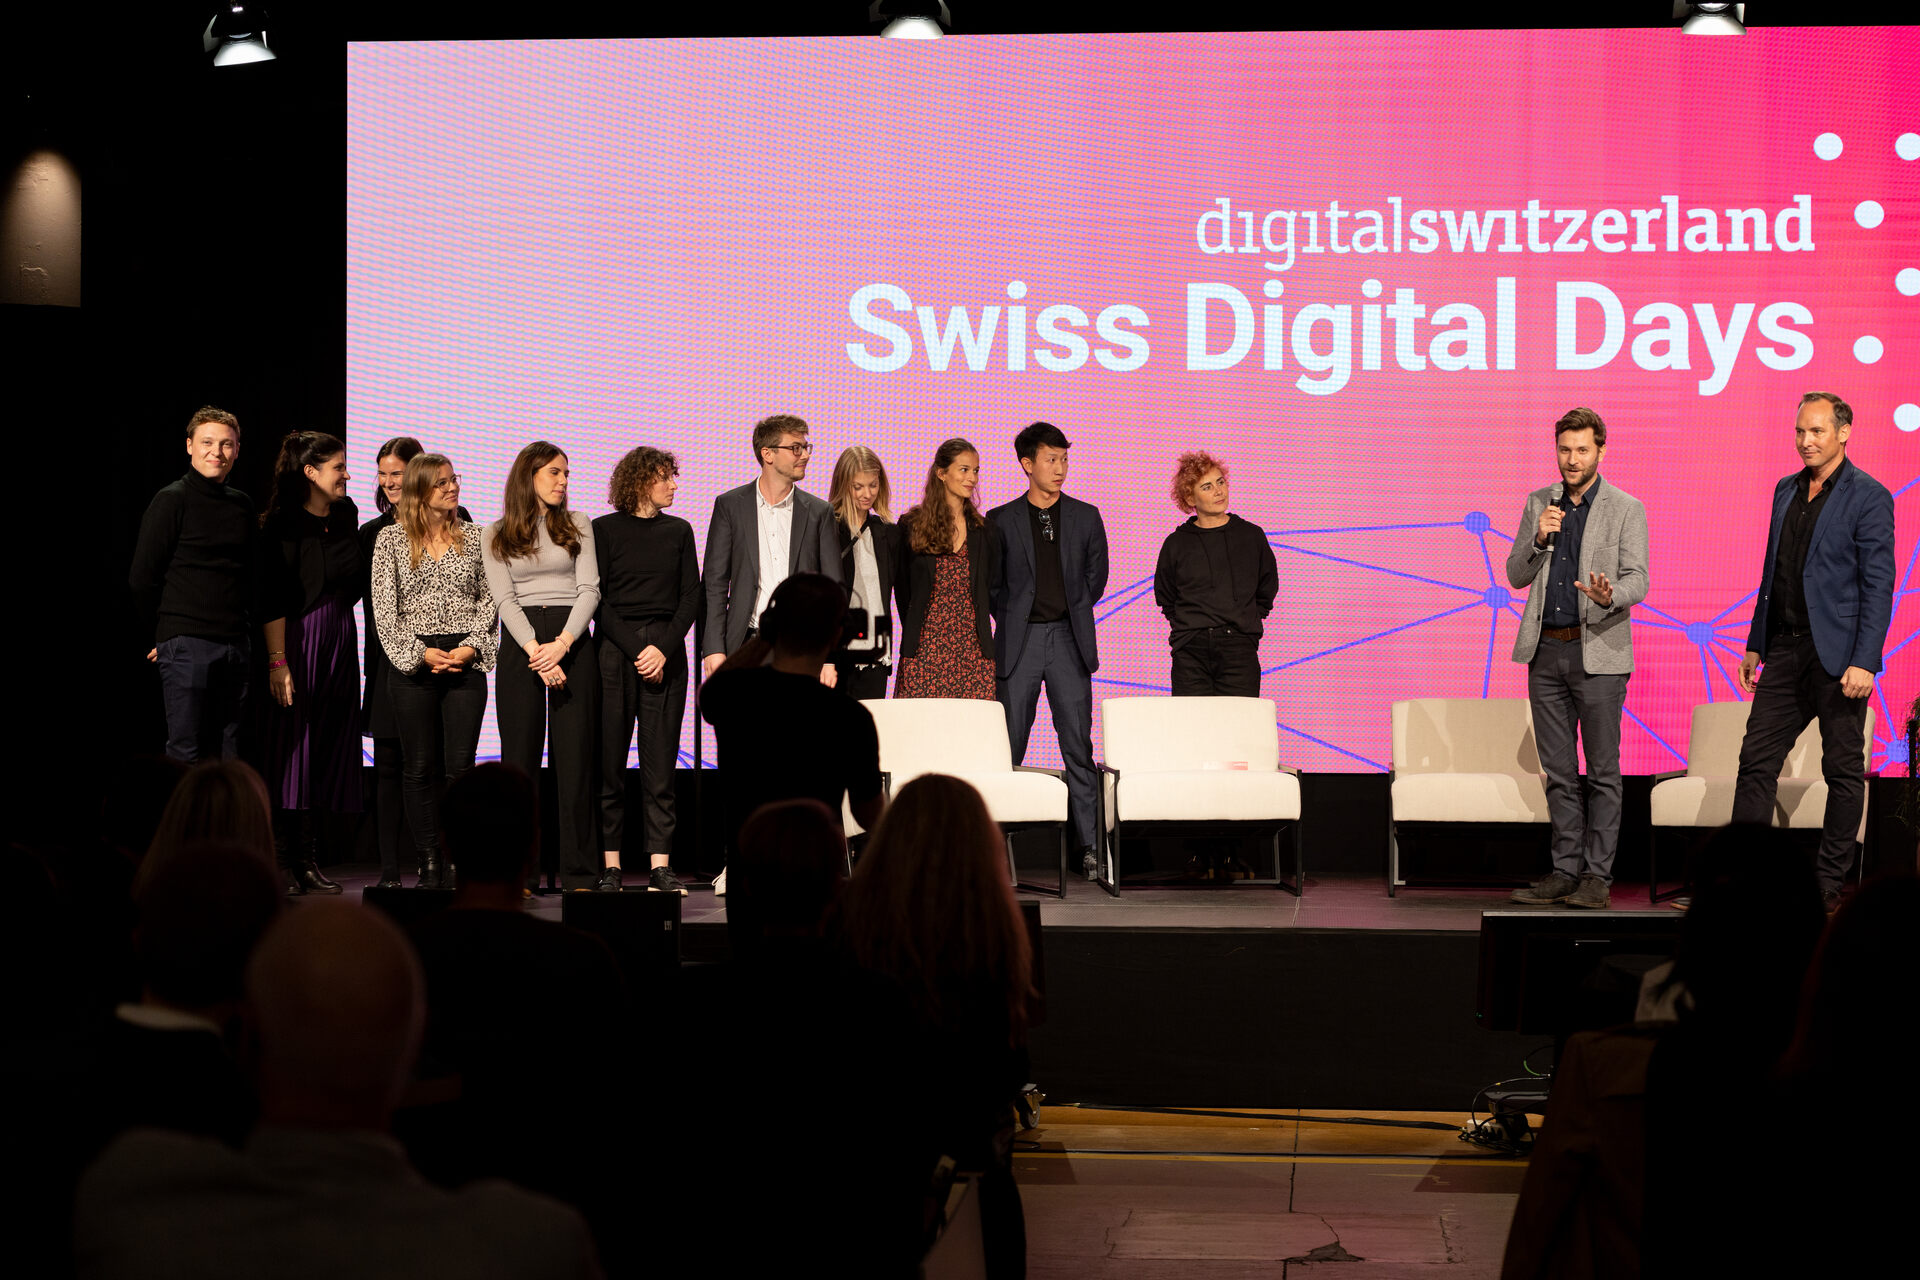 Šveices digitālās dienas: 2022. gada "Swiss Digital Days" noslēguma pasākums Freiruum Cūgā (Zug) 27. oktobrī: Digitalswitzerland organizatoru komanda